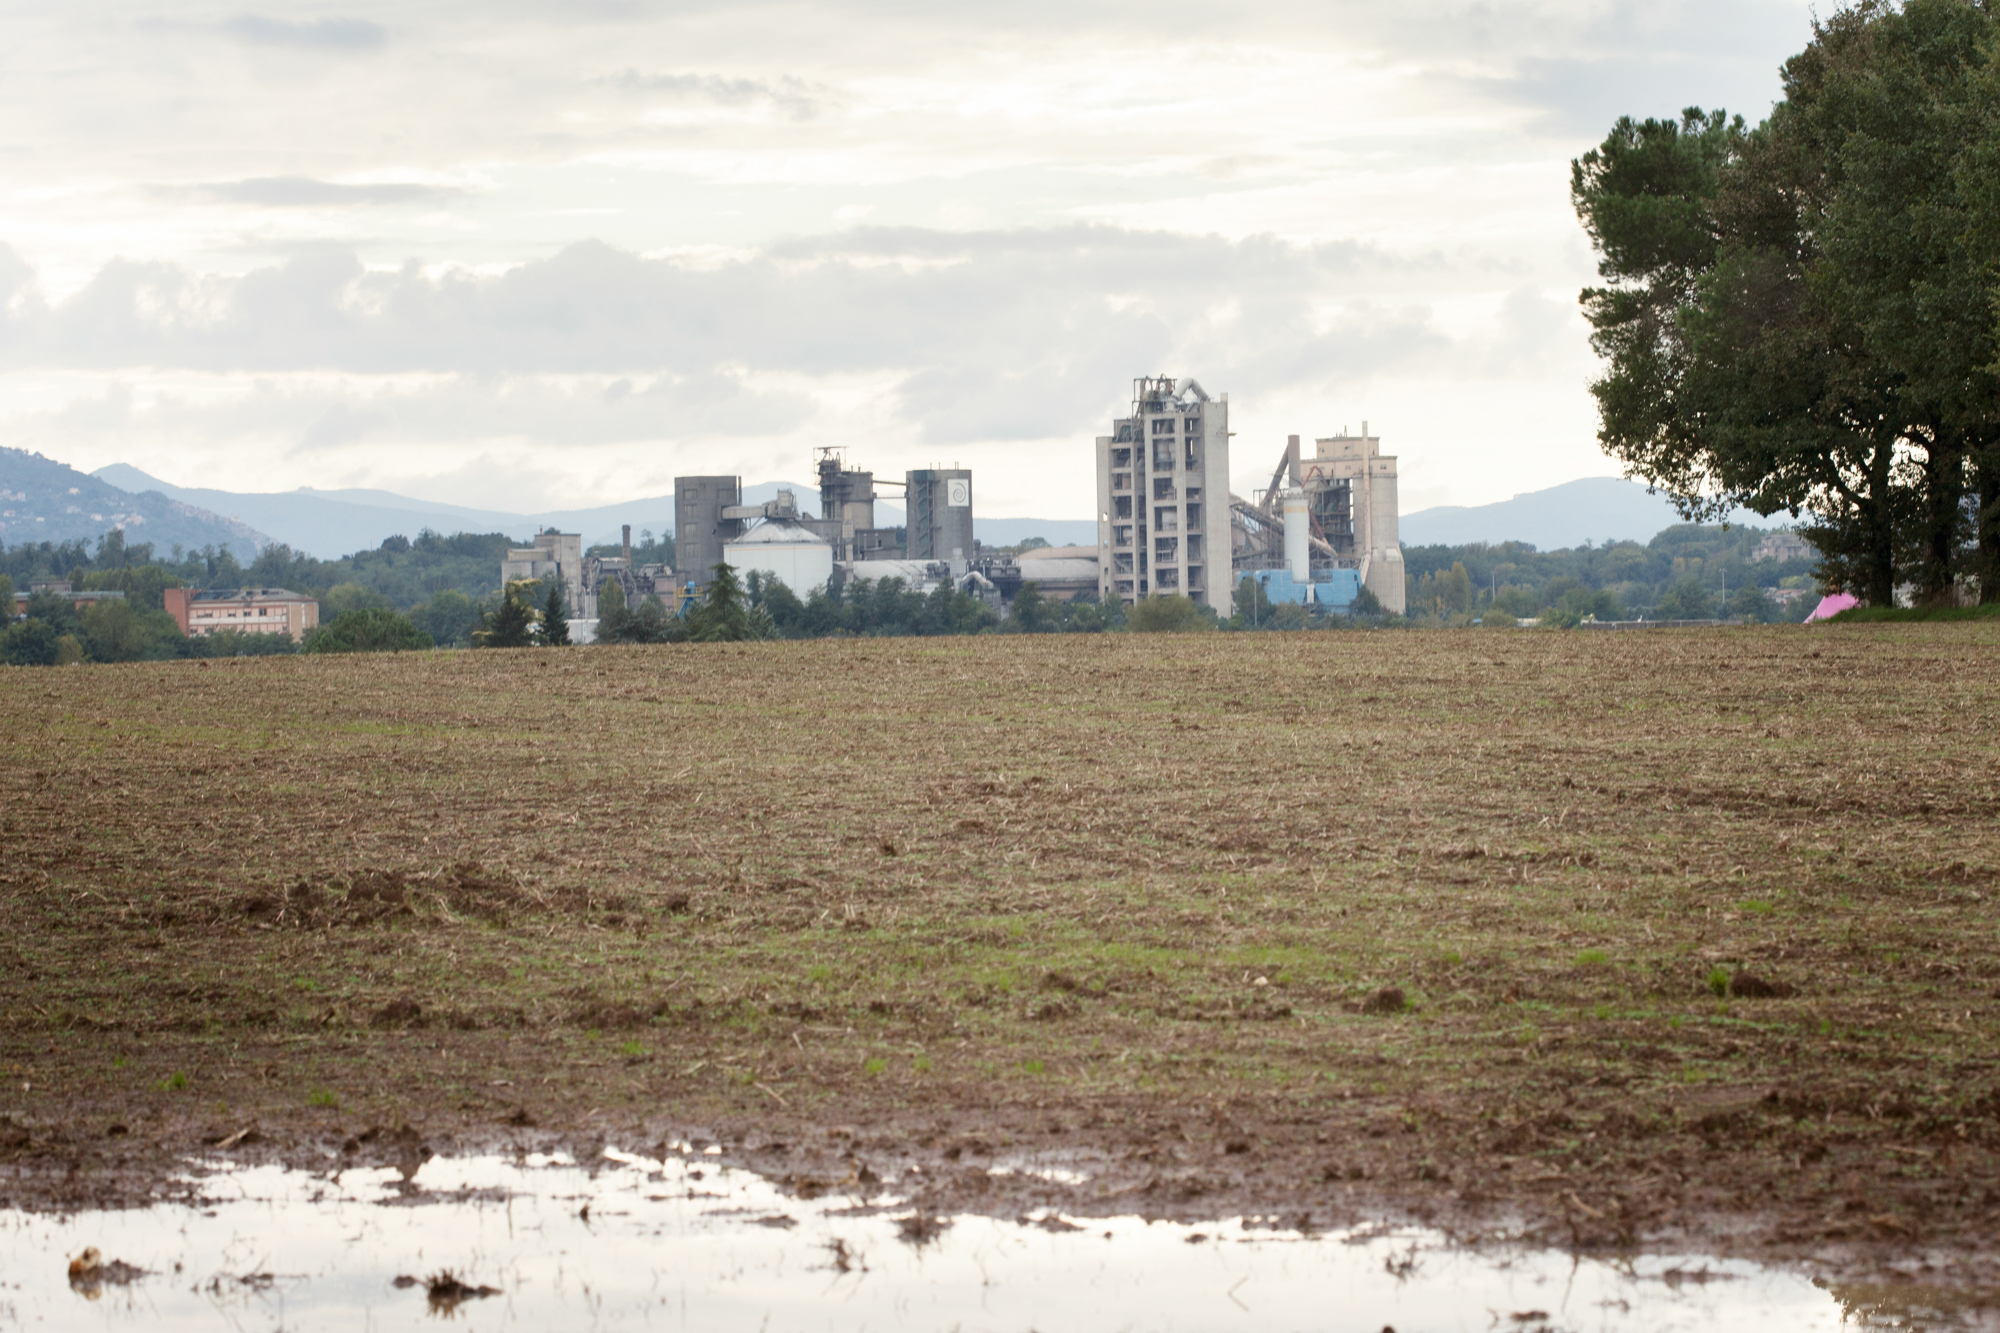  Molti sono i terreni utilizzati come discariche abusive di materiali altamente tossici che hanno inquinato le falde acquifere superficiali.&nbsp;Colleferro, novembre 2013 